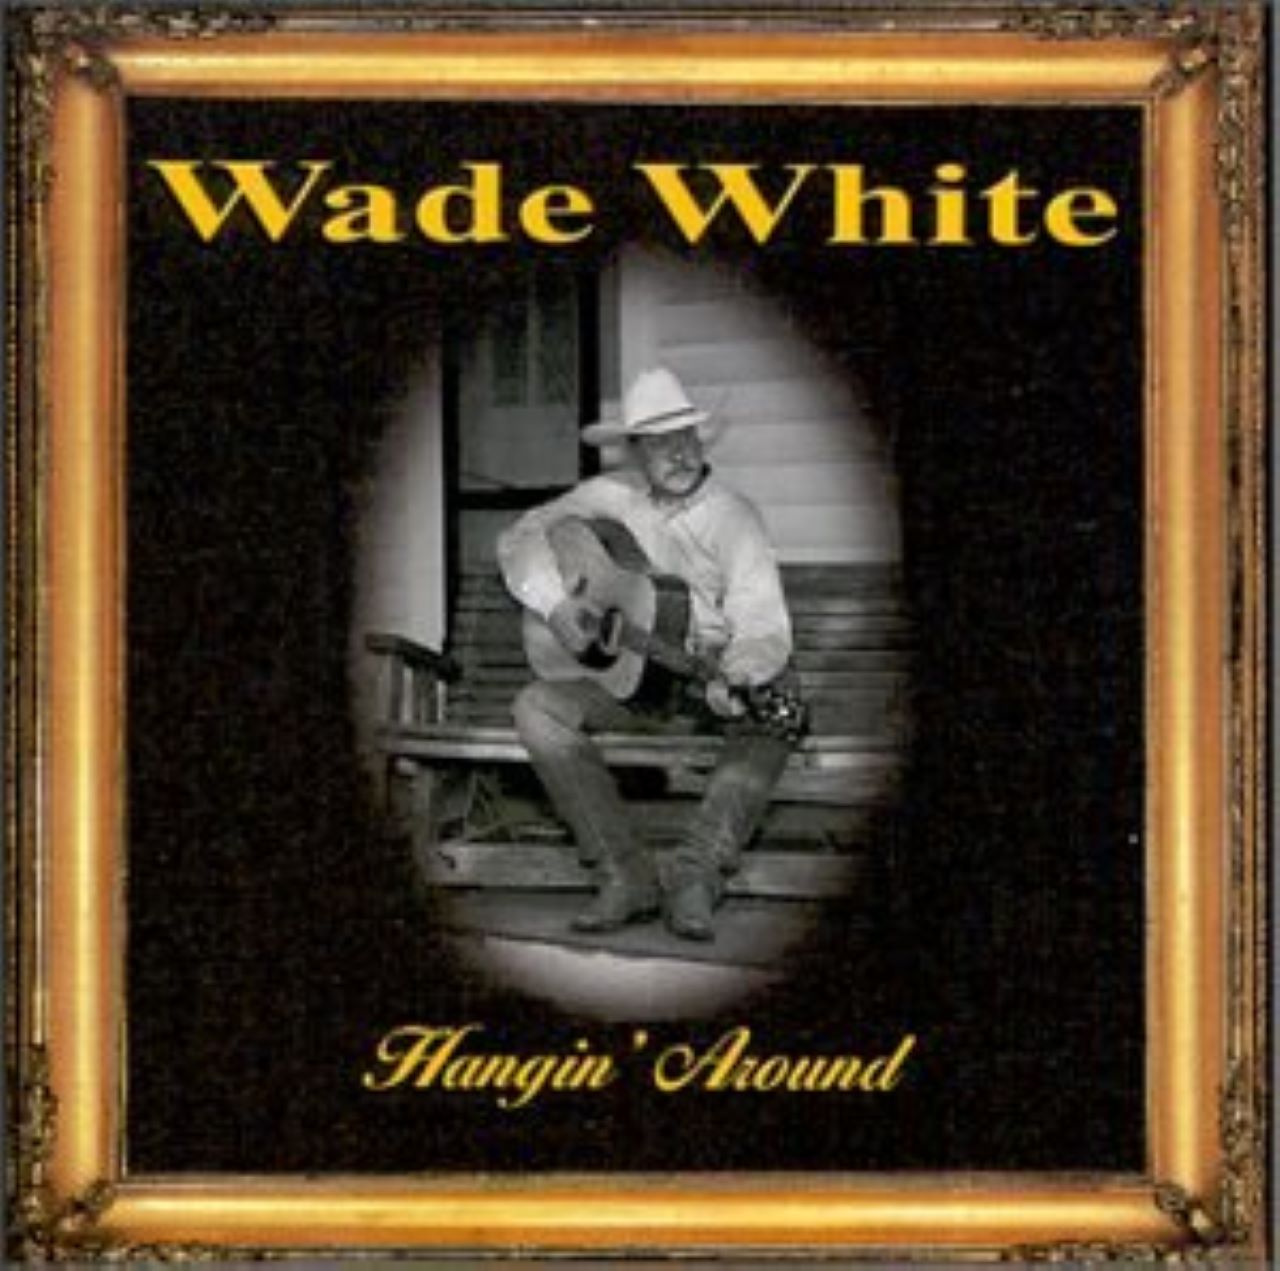 Wade White - Hangin’ Around cover album